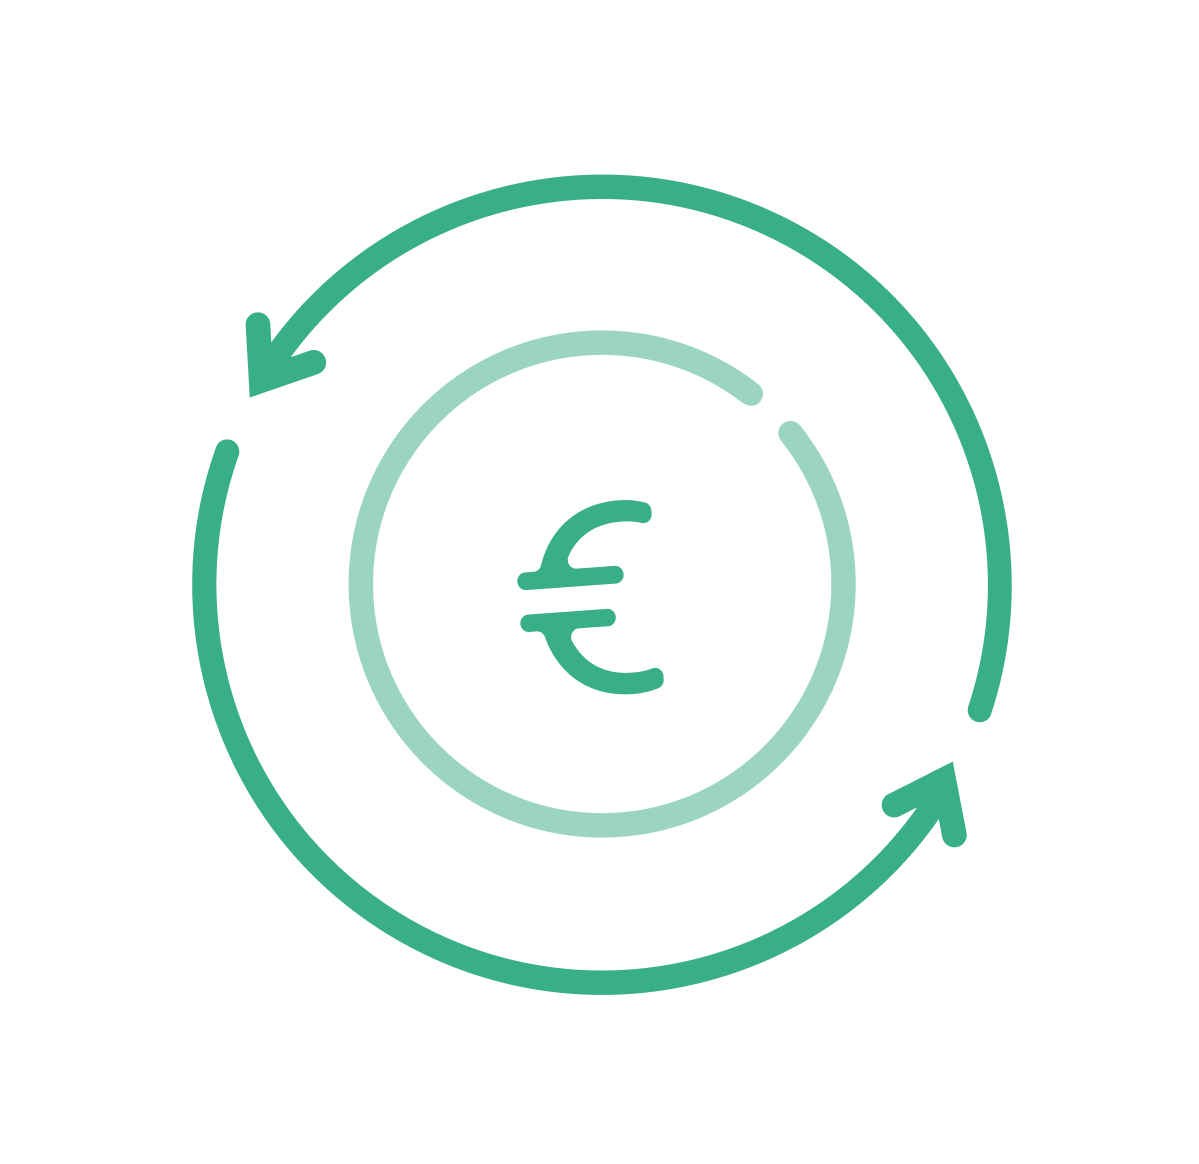 Símbolo del dólar y líneas con flechas que representan el movimiento del dinero